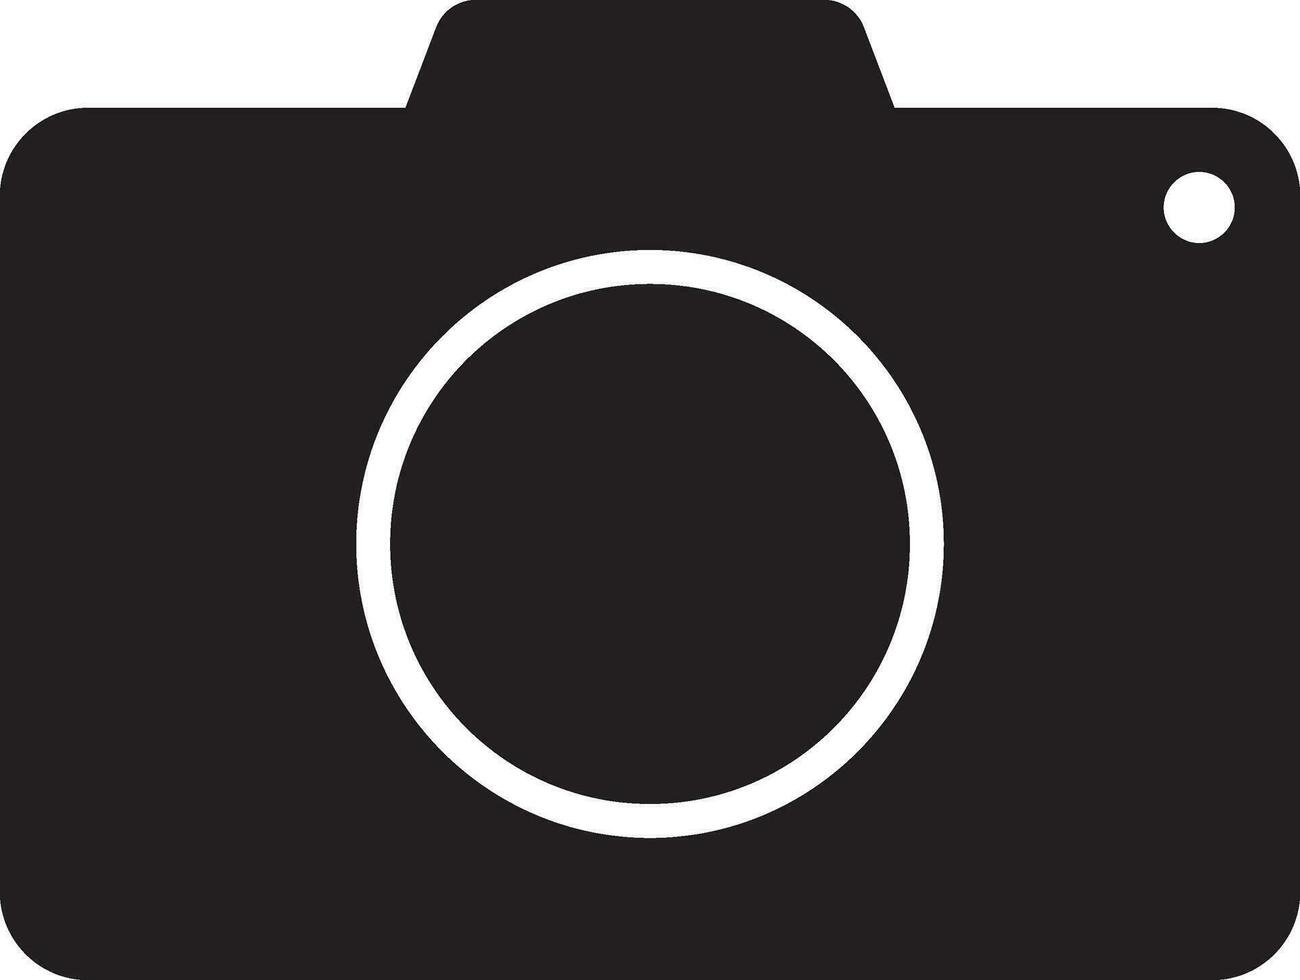 élégant noir et blanc illustration de une caméra. vecteur